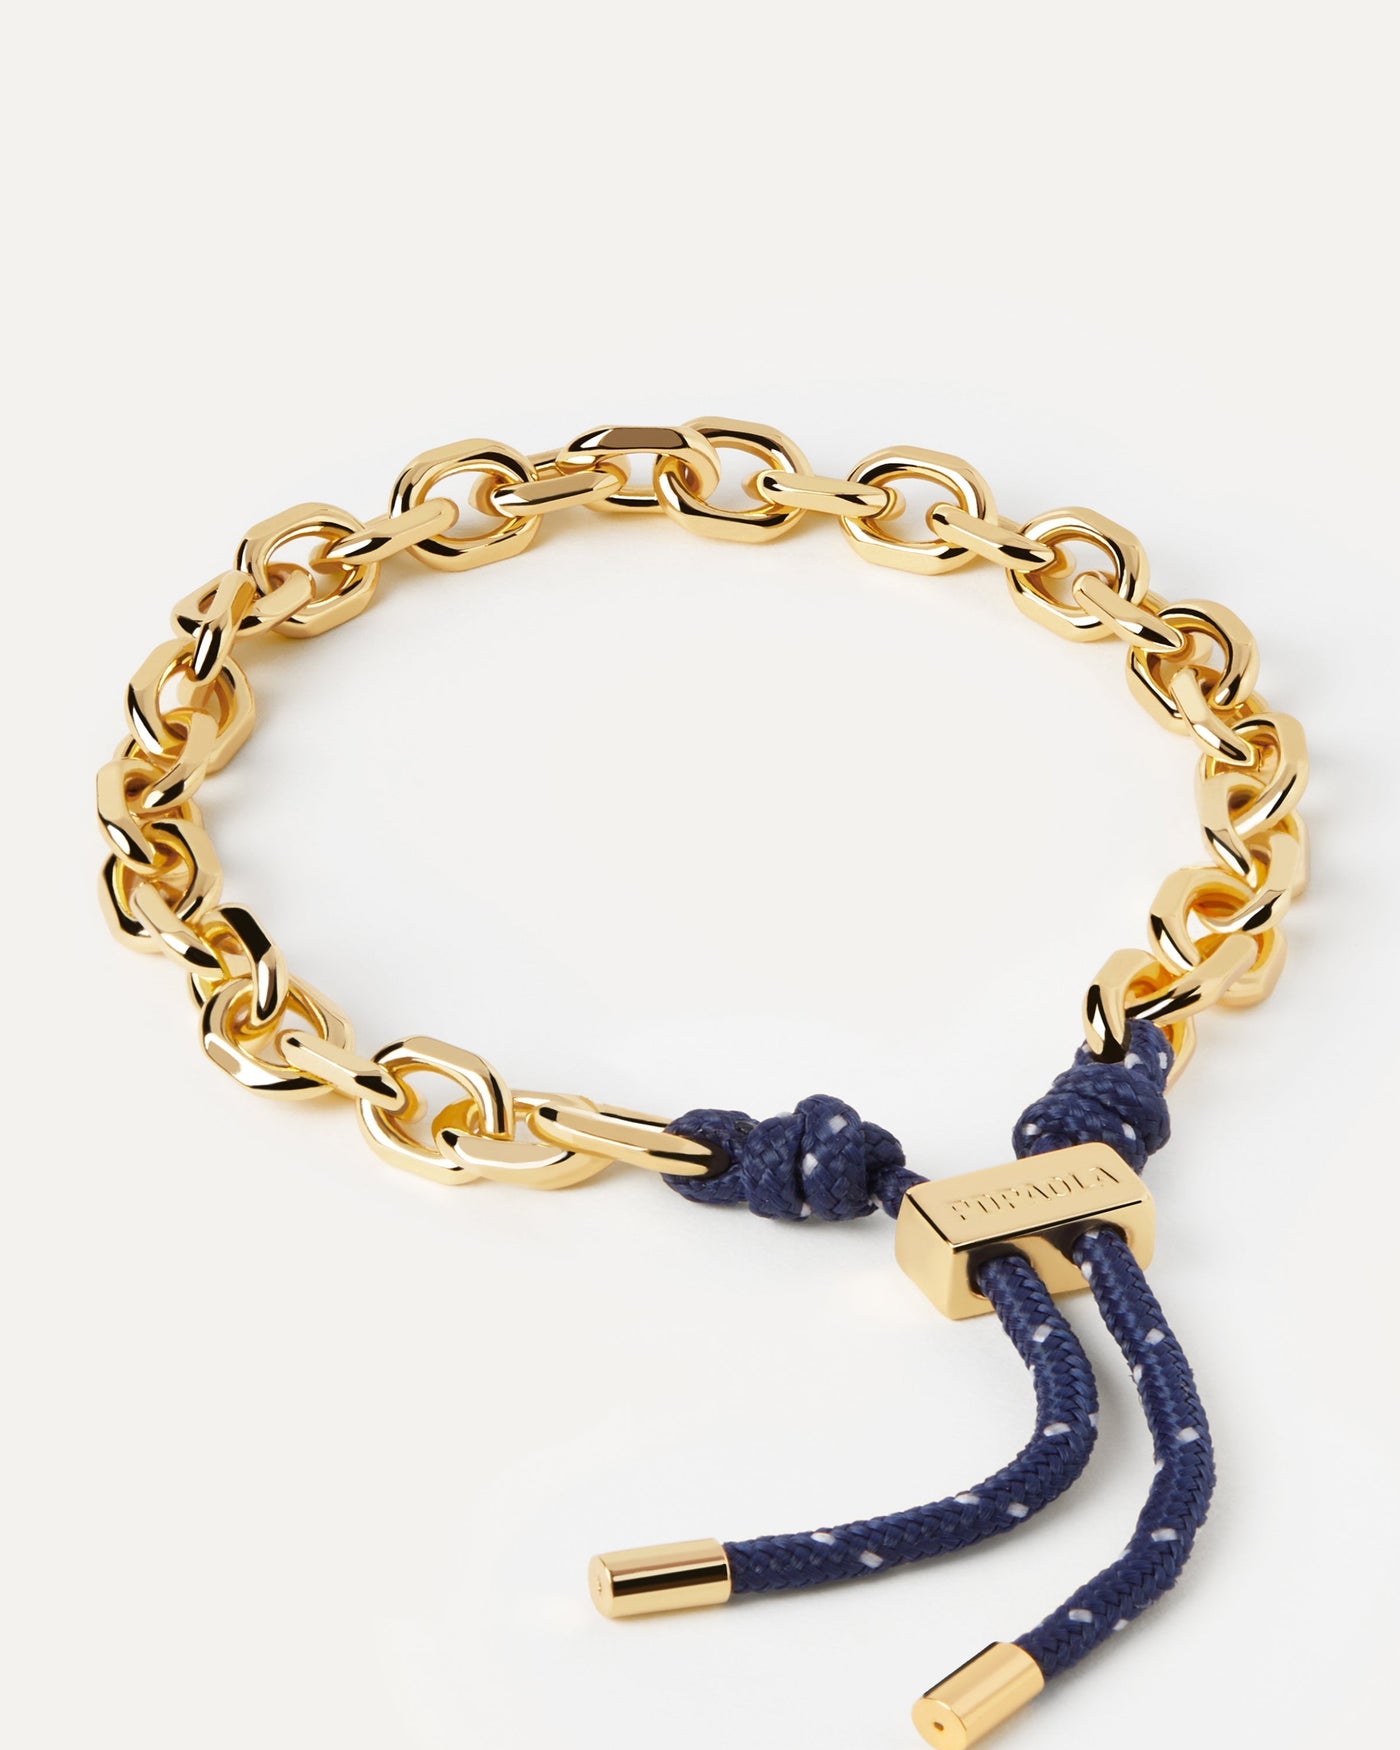 Sélection 2023 | Bracelet Cordon et Chaîne Midnight Essential. Bracelet chaîne doré avec corde bleu marine et fermoir coulissant ajustable. Découvrez les dernières nouveautés de chez PDPAOLA. Commandez et recevez votre bijou en toute sérénité. Livraison gratuite.